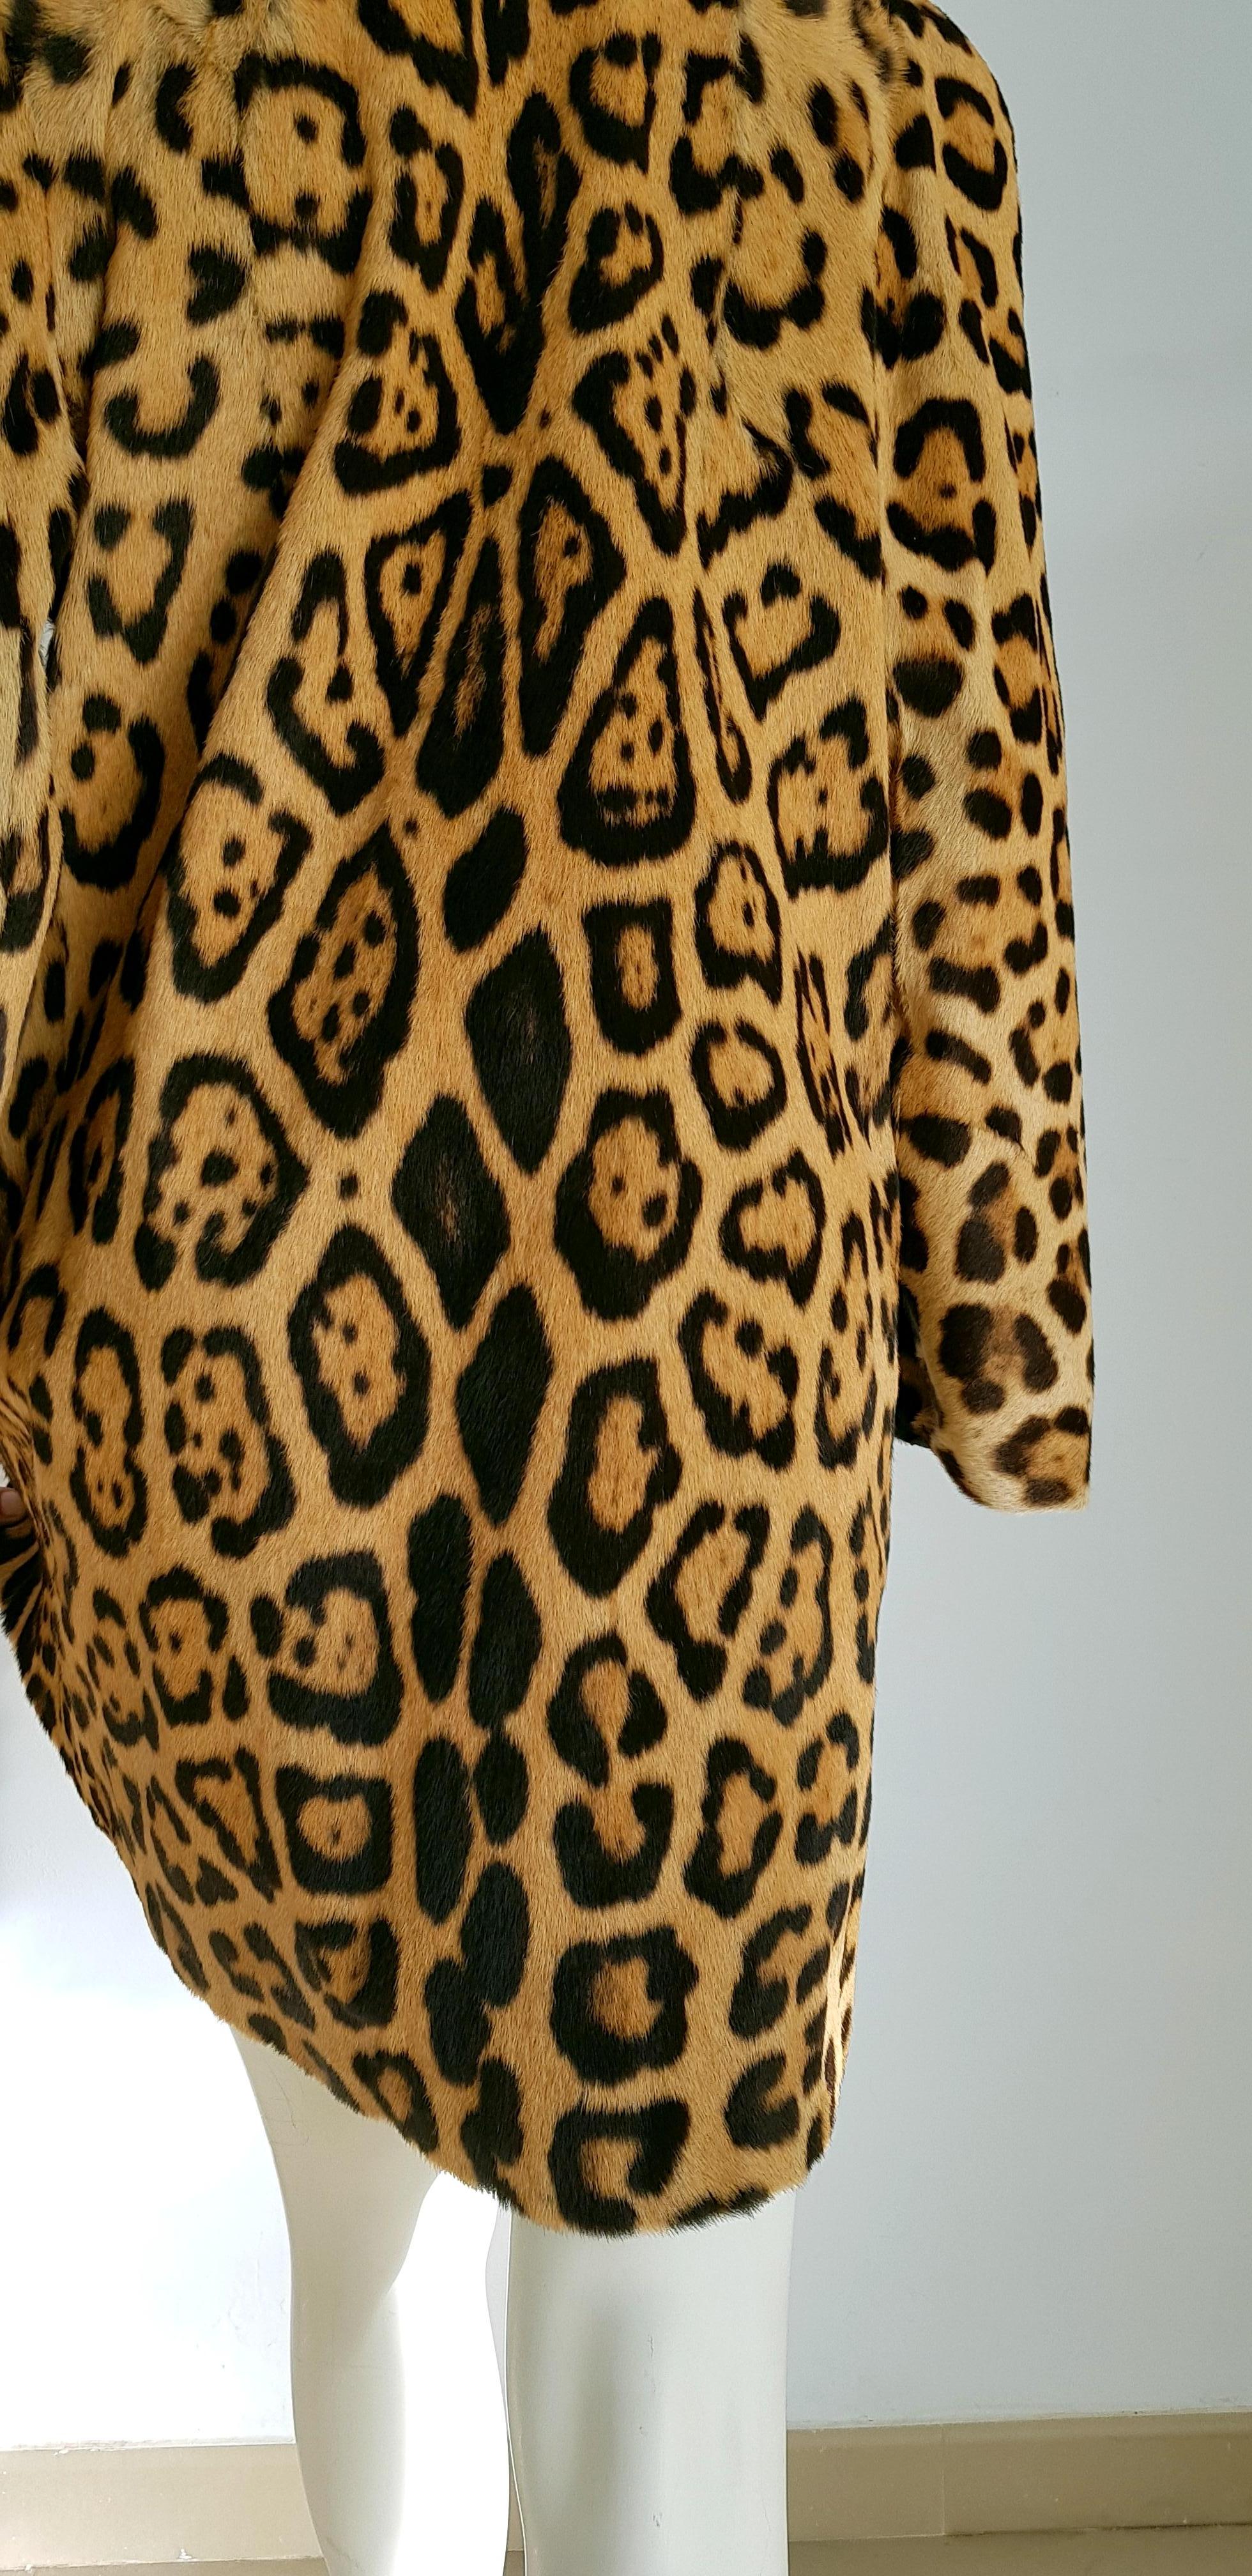 jaguar skin coat